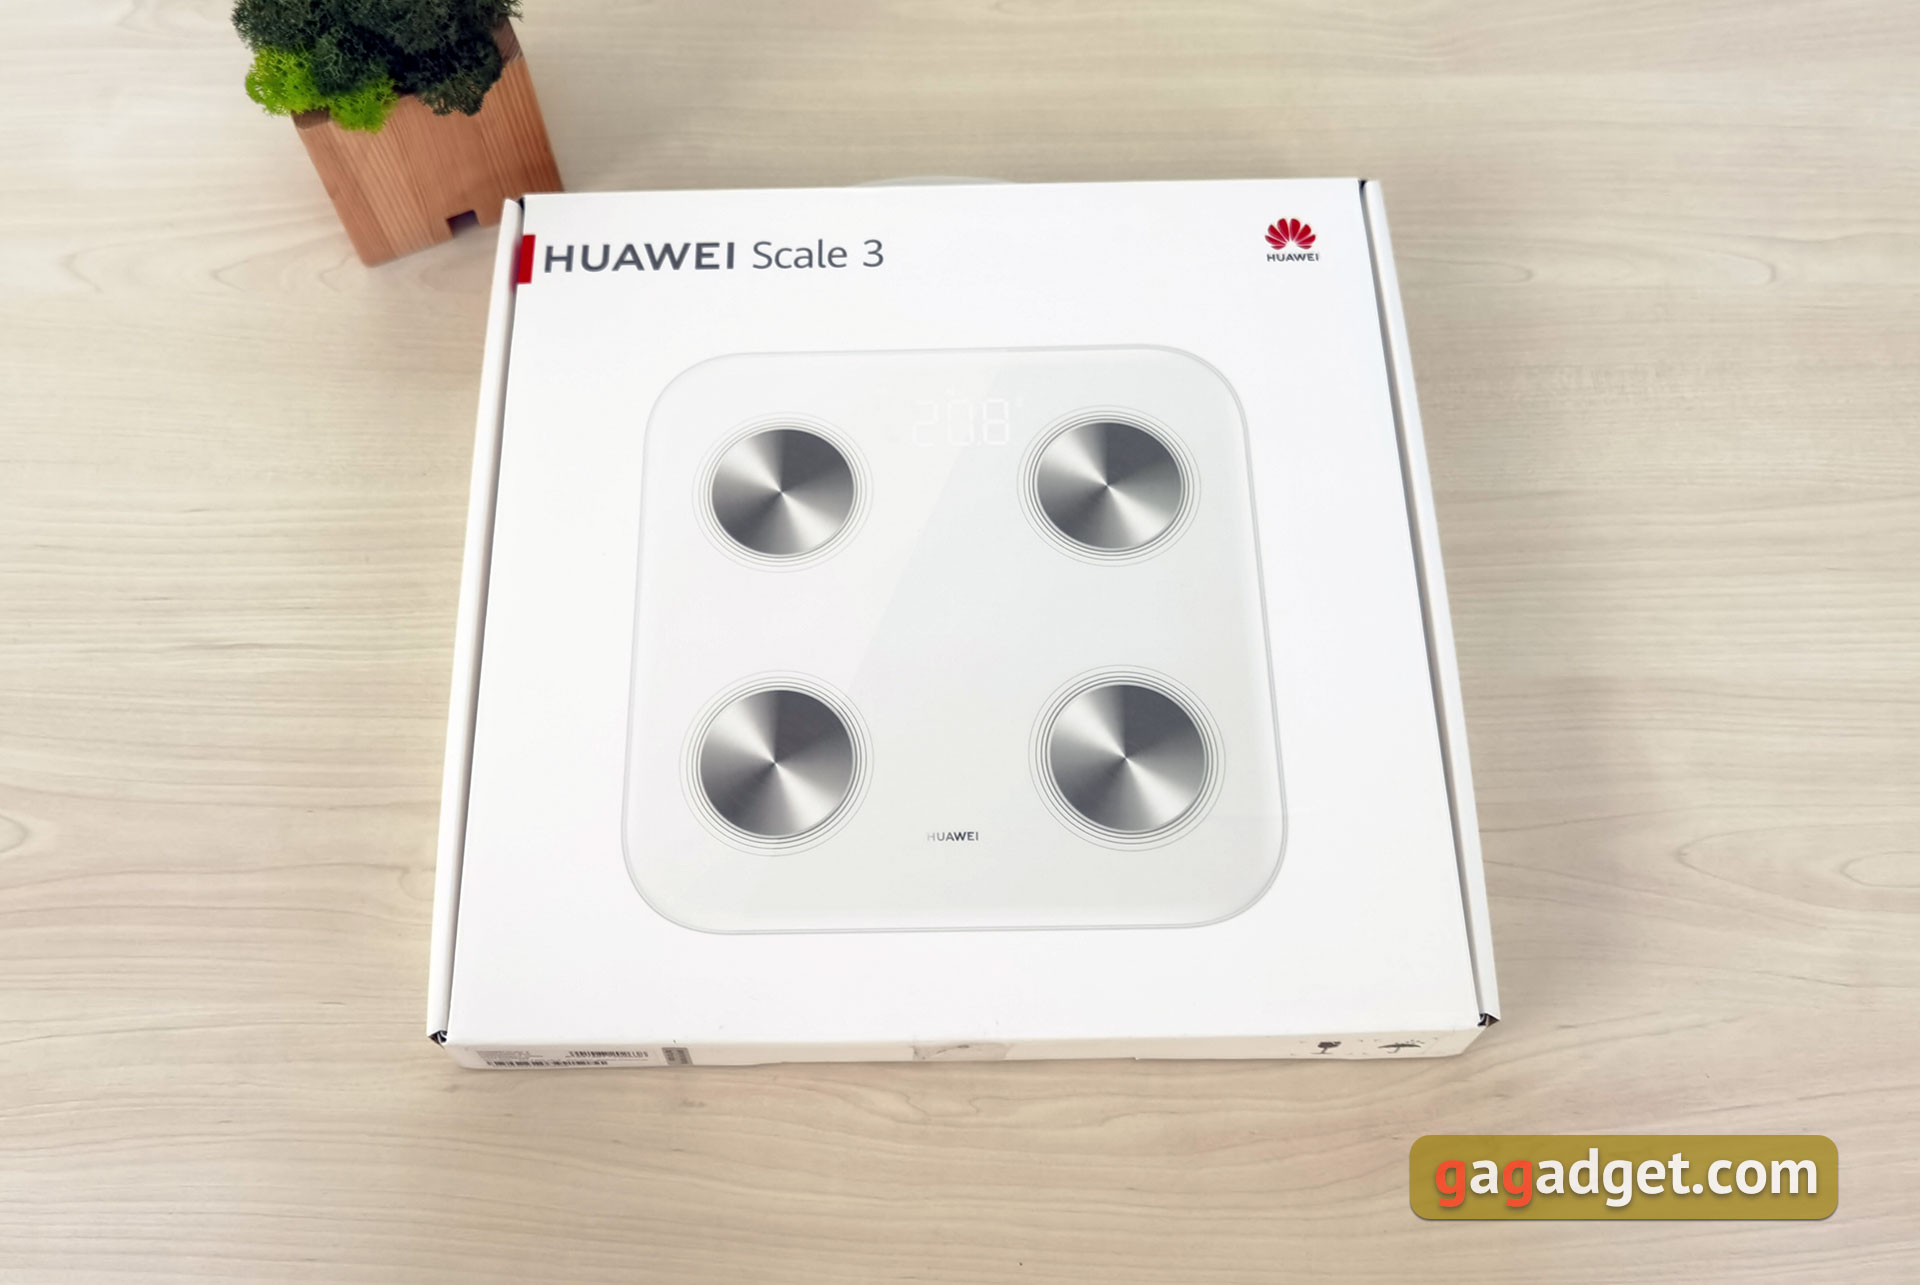 Recenzja Huawei Scale 3: Diagnostyczne centrum domowe z technologią Bluetooth i Wi-Fi-2